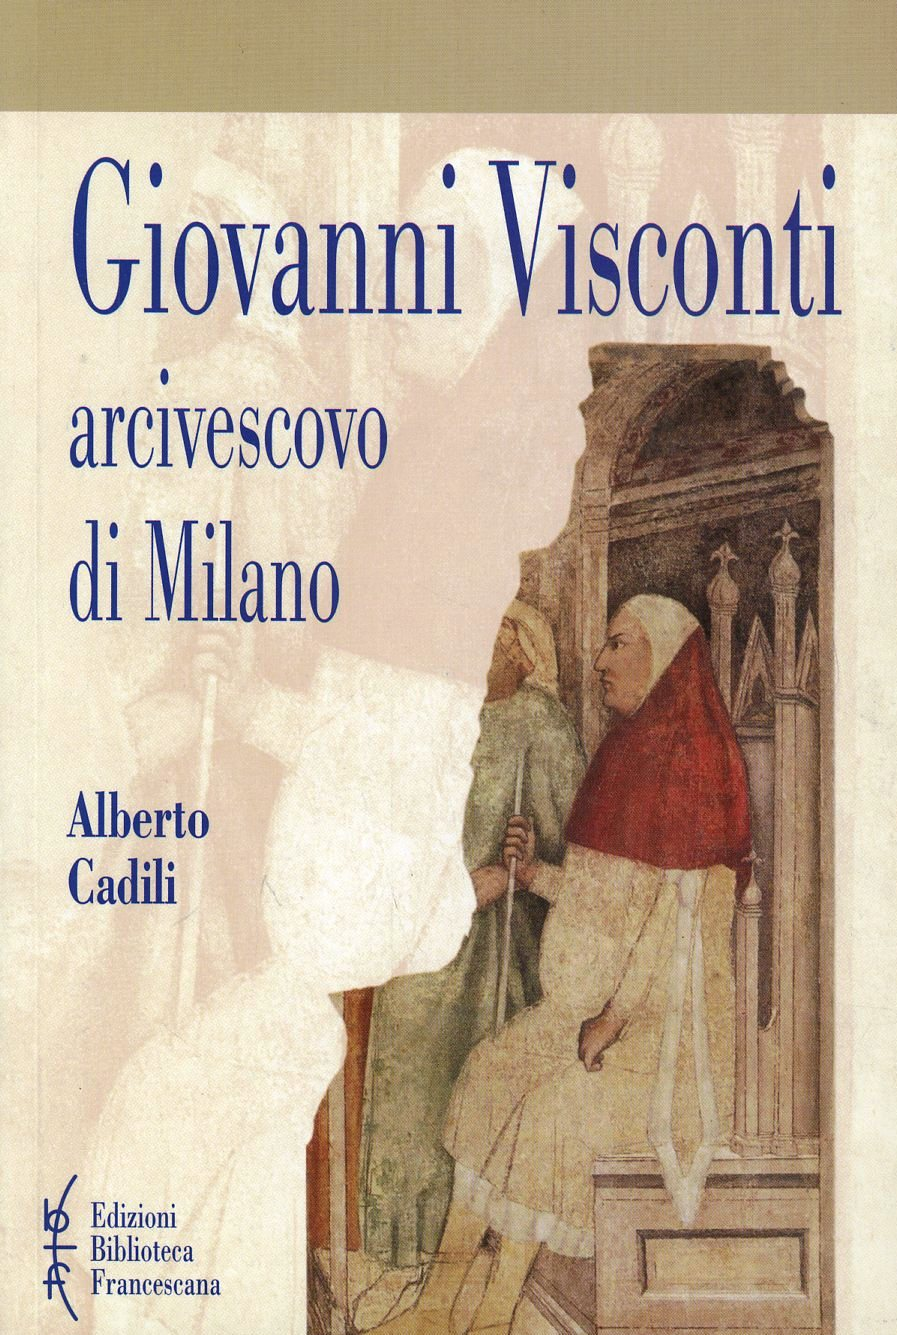 Image of Giovanni Visconti arcivescovo di Milano (1342-1354)